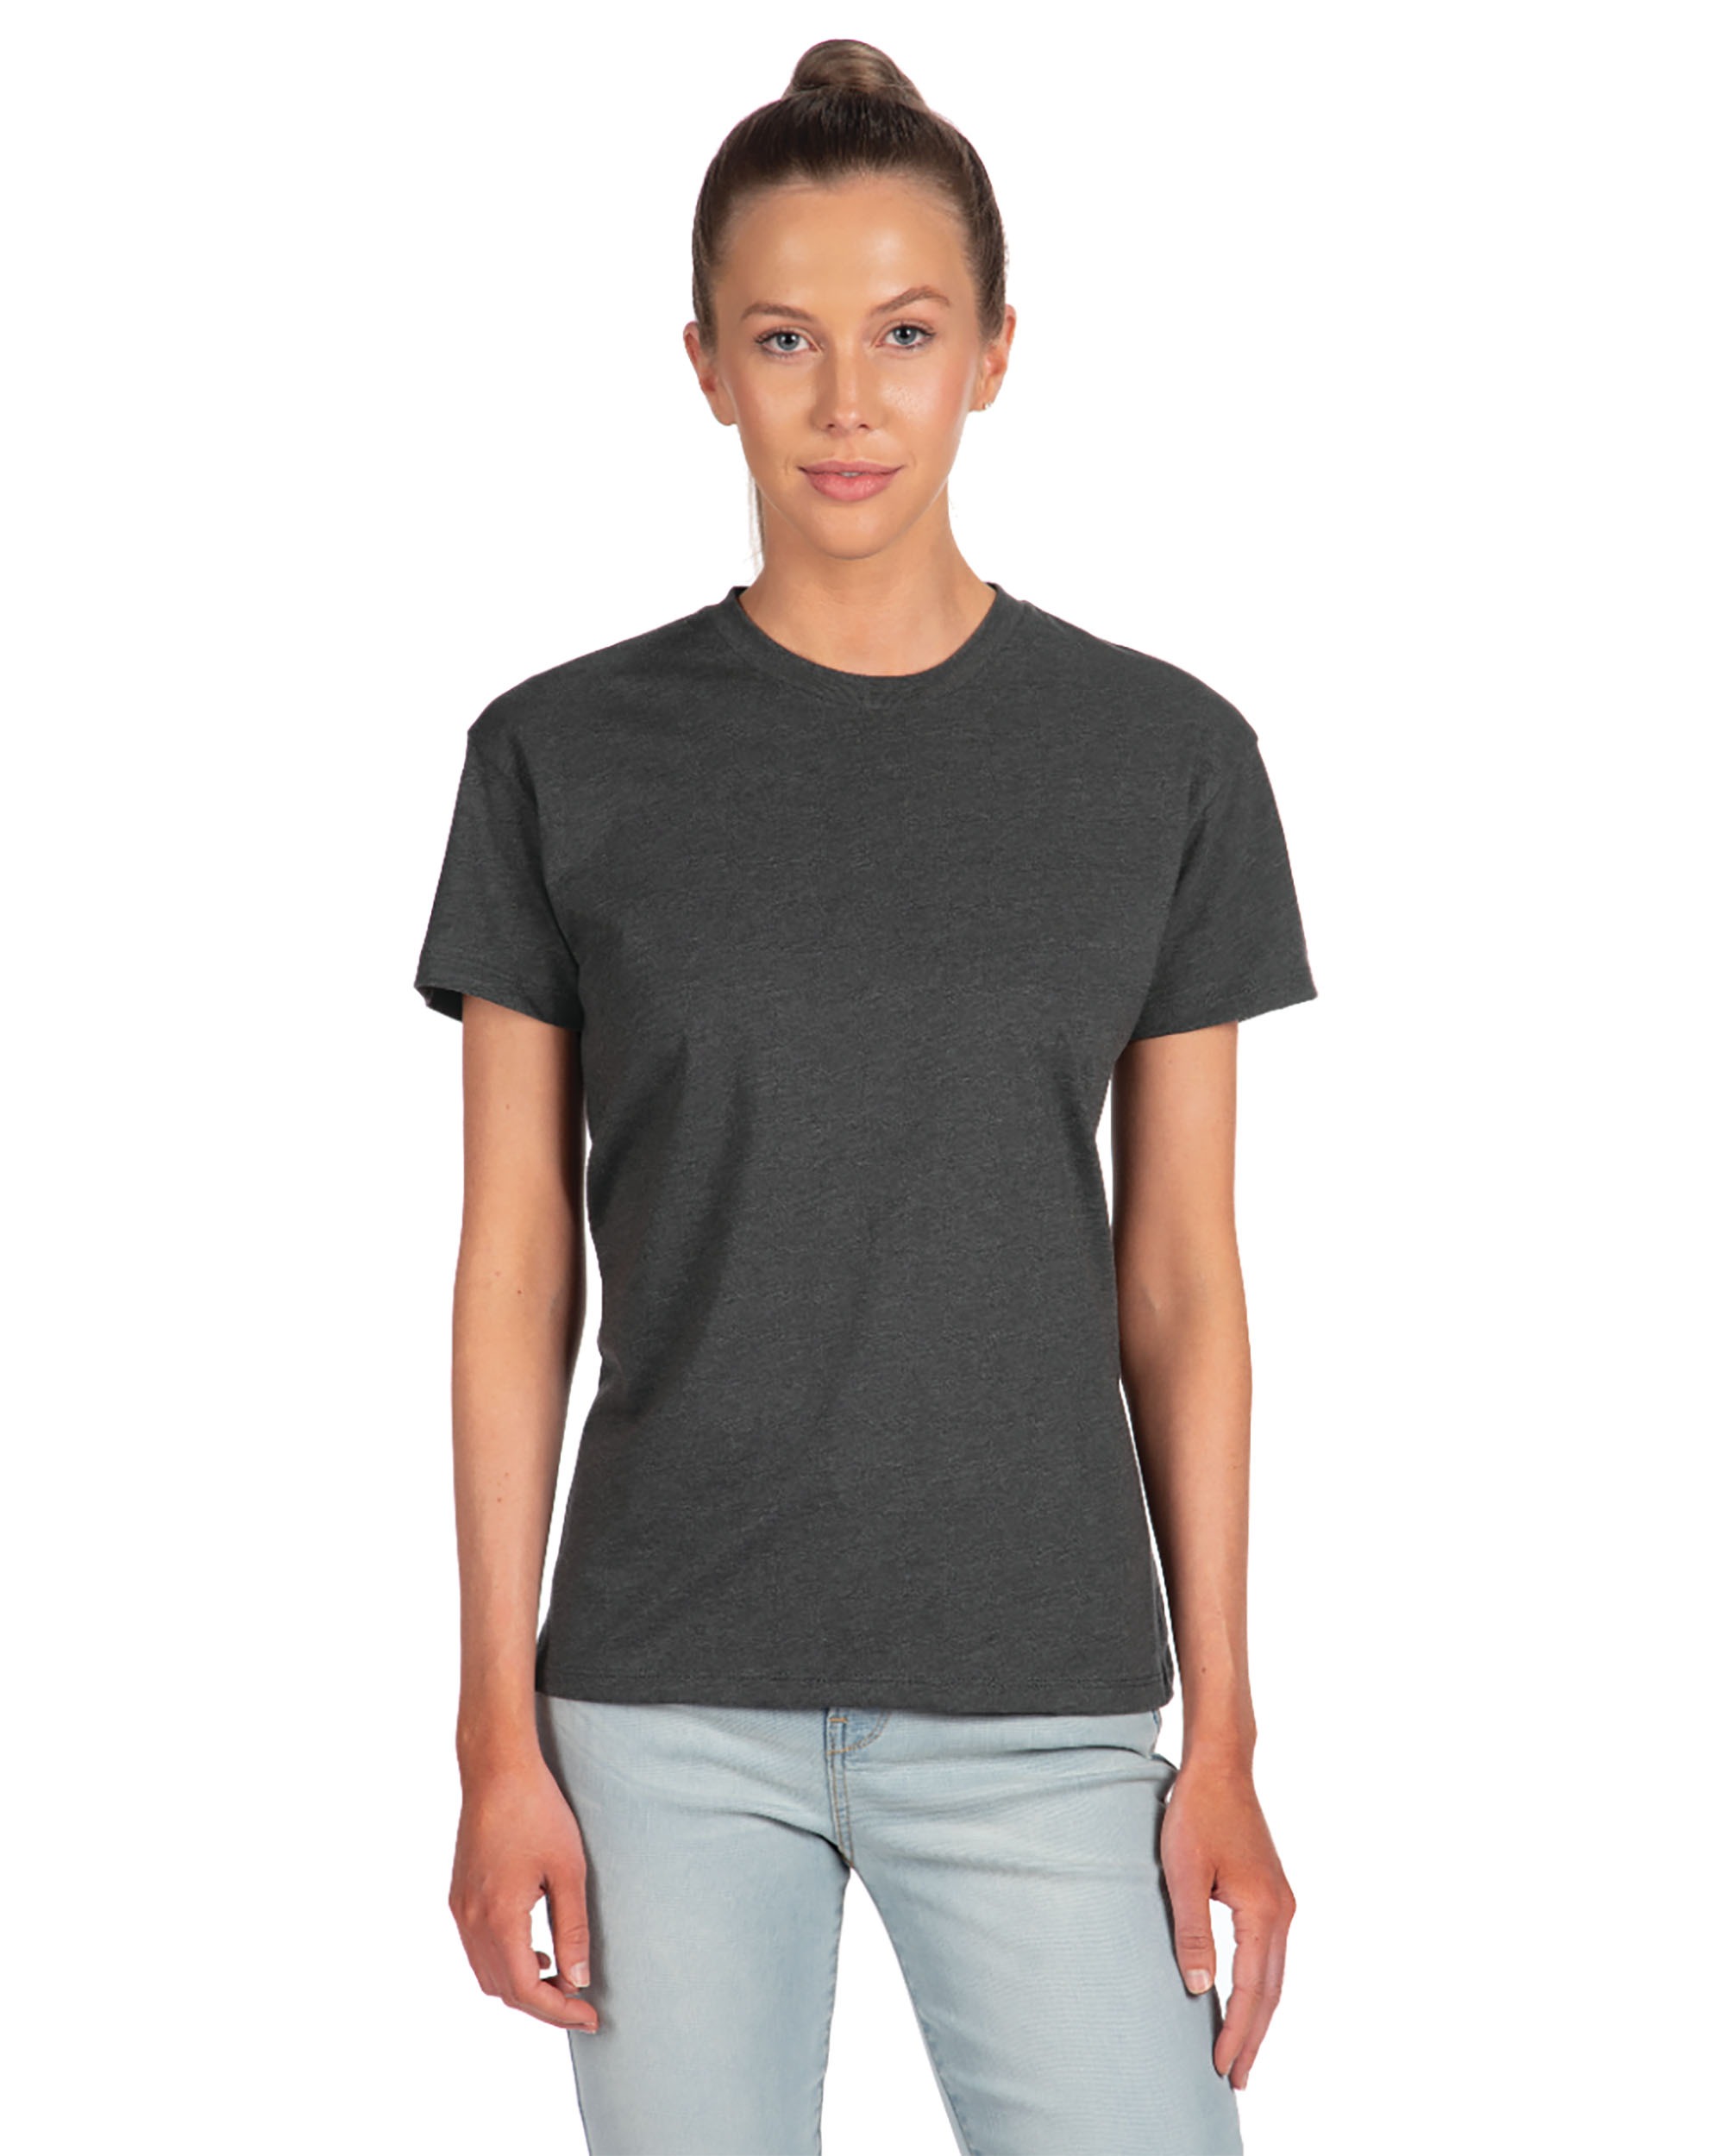 Next Level Apparel® 6600 Women's CVC Relaxed T-Shirt